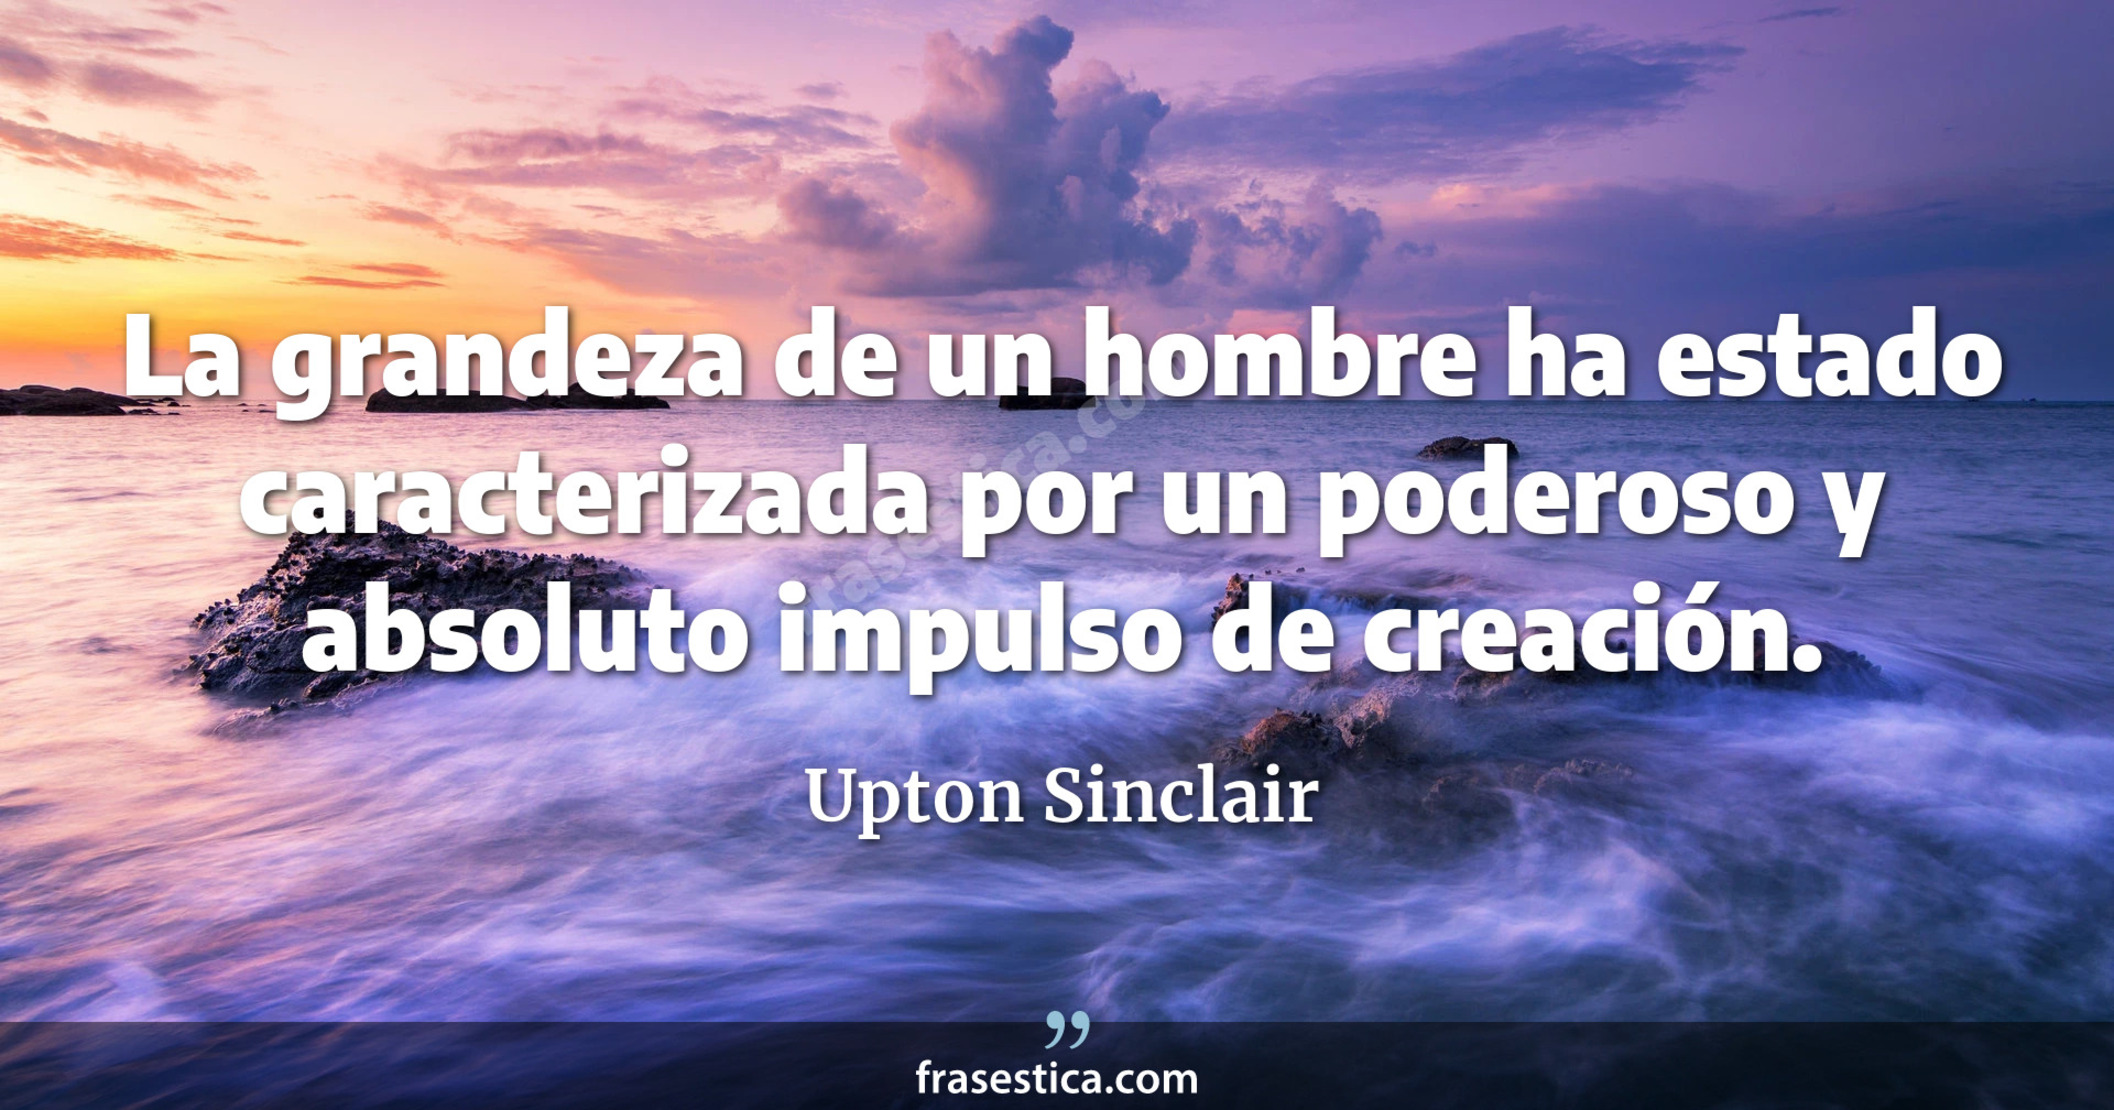 La grandeza de un hombre ha estado caracterizada por un poderoso y absoluto impulso de creación. - Upton Sinclair